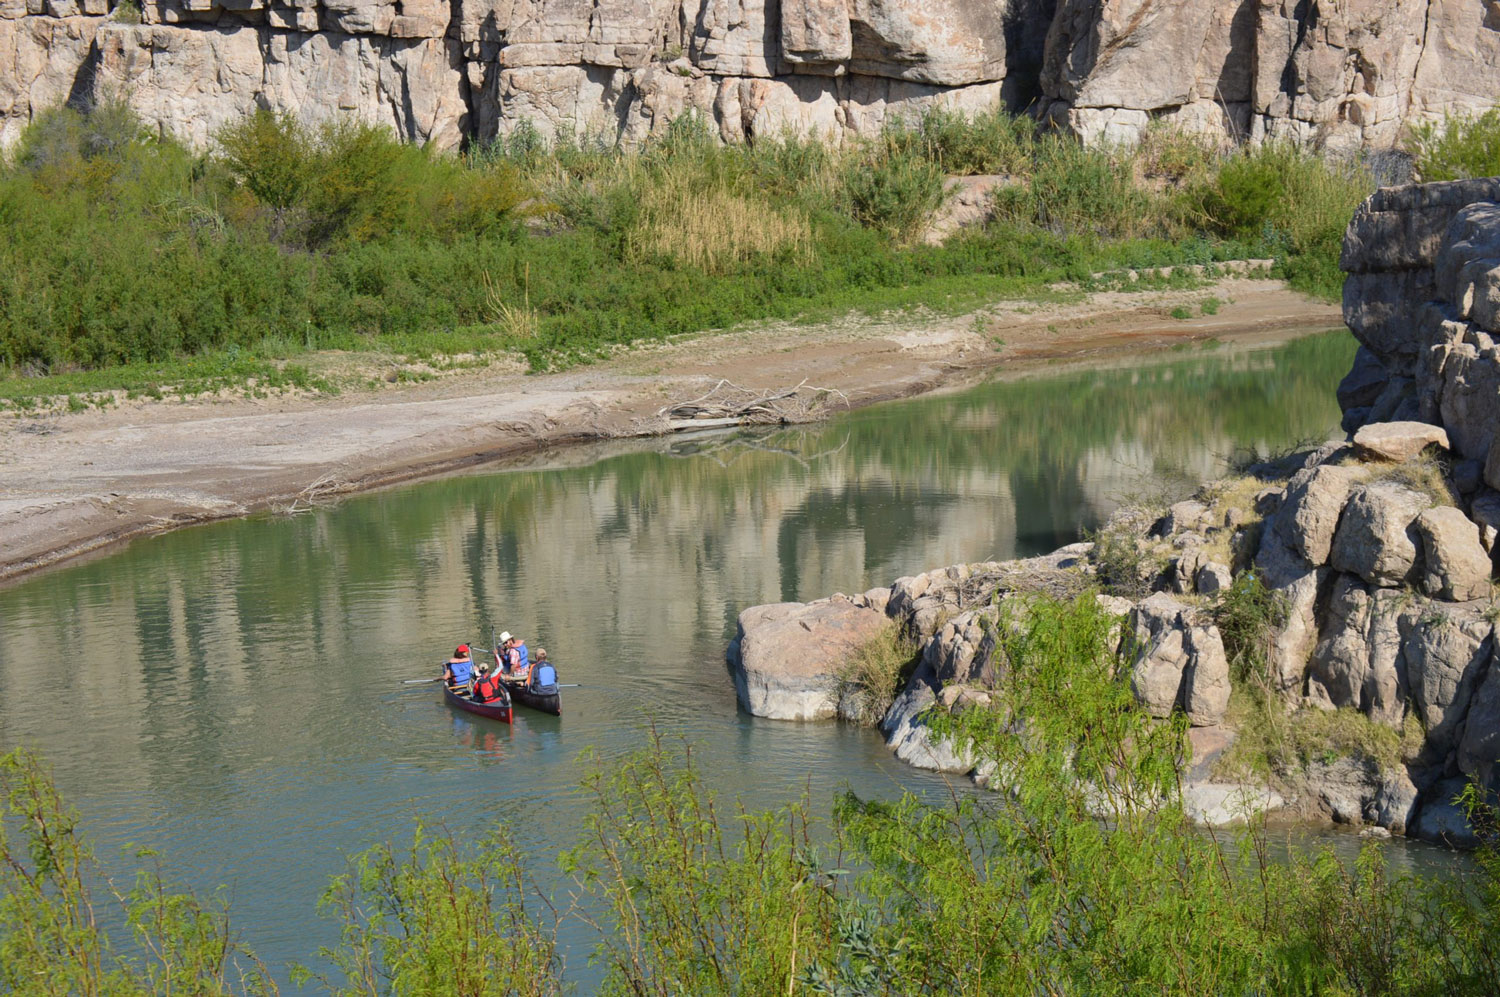 Tourists canoeing the Rio Grande River near Boquillas, Mexico.